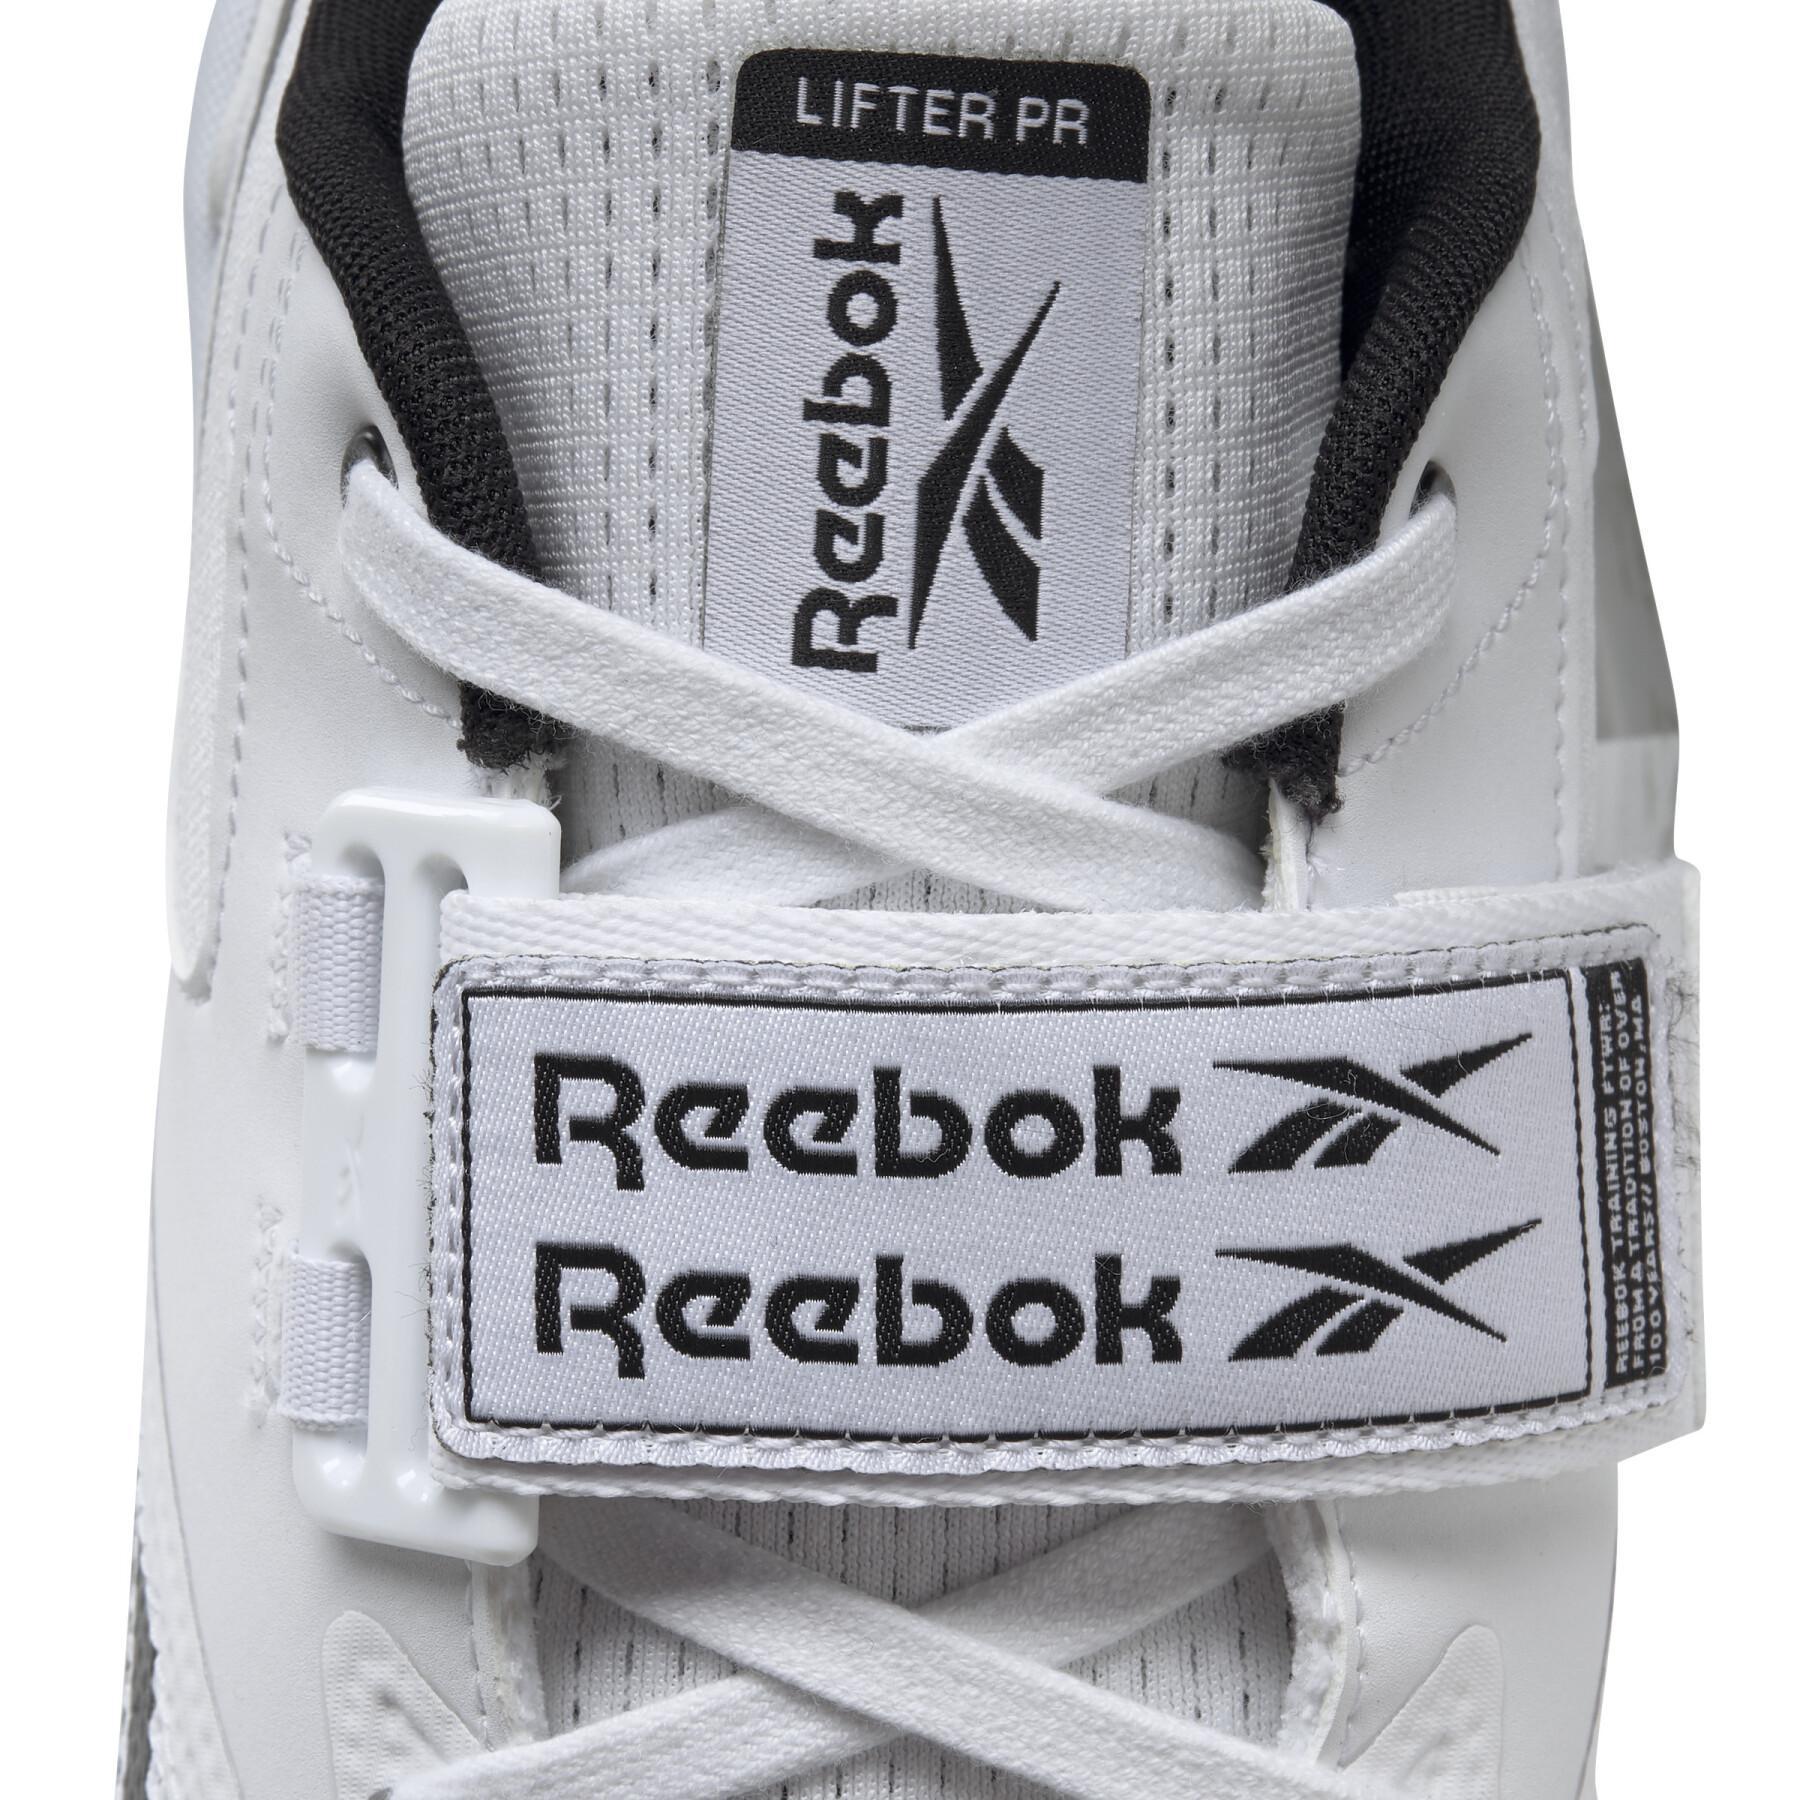 Chaussures Reebok Lifter Pr II